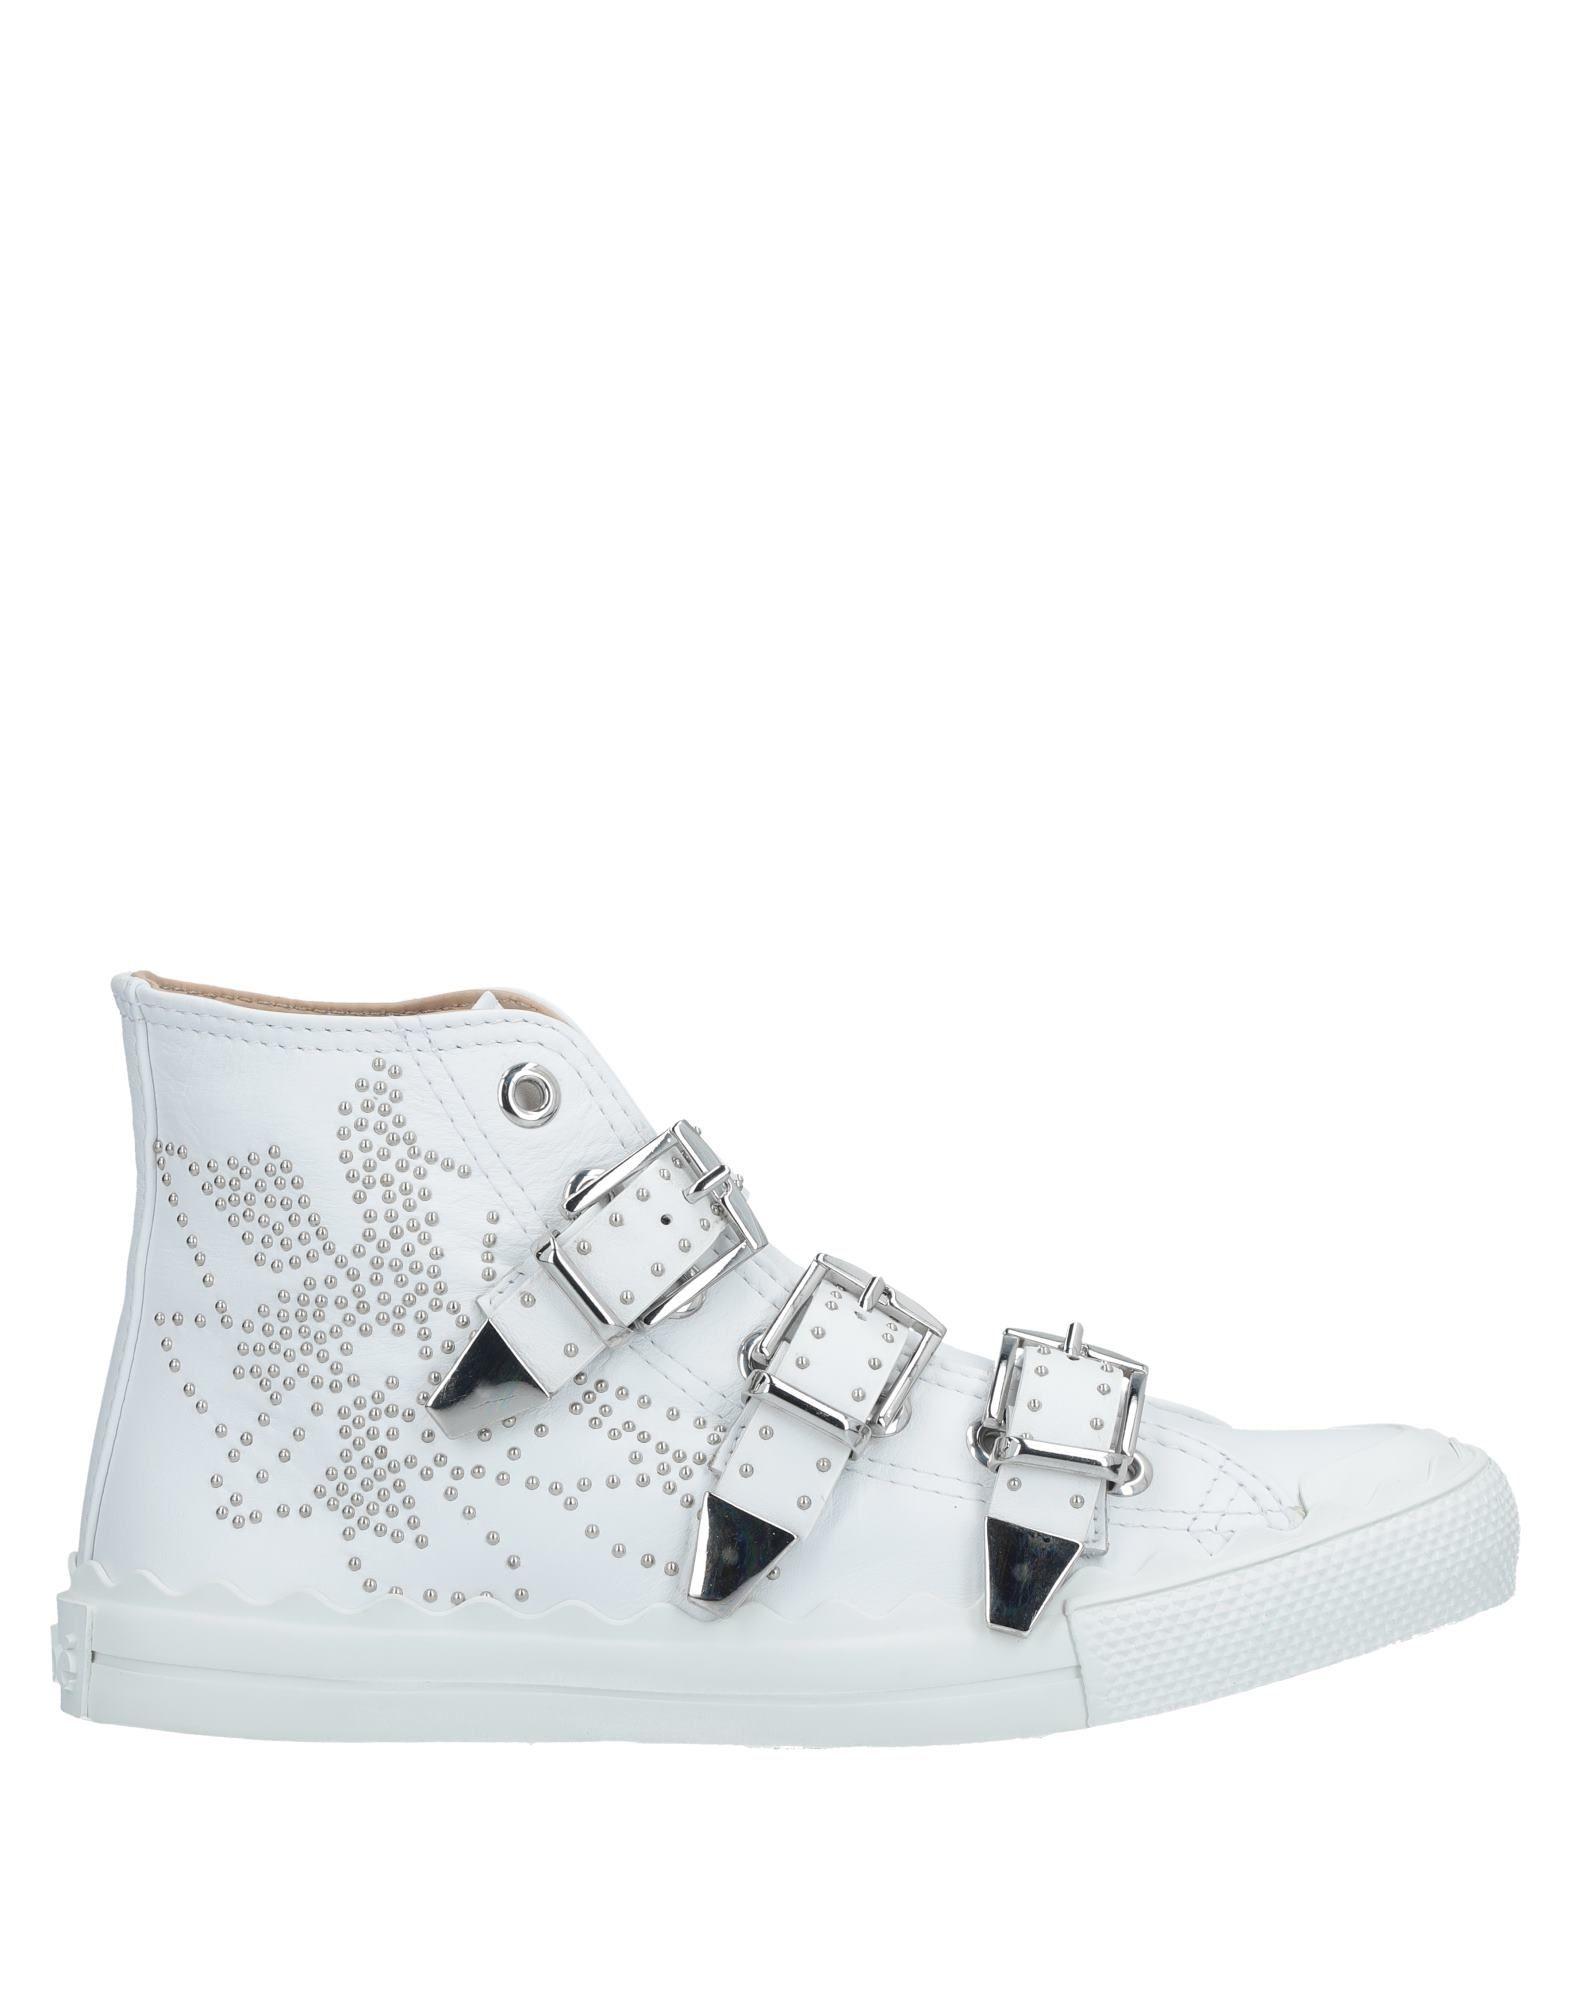 chloe white sneakers